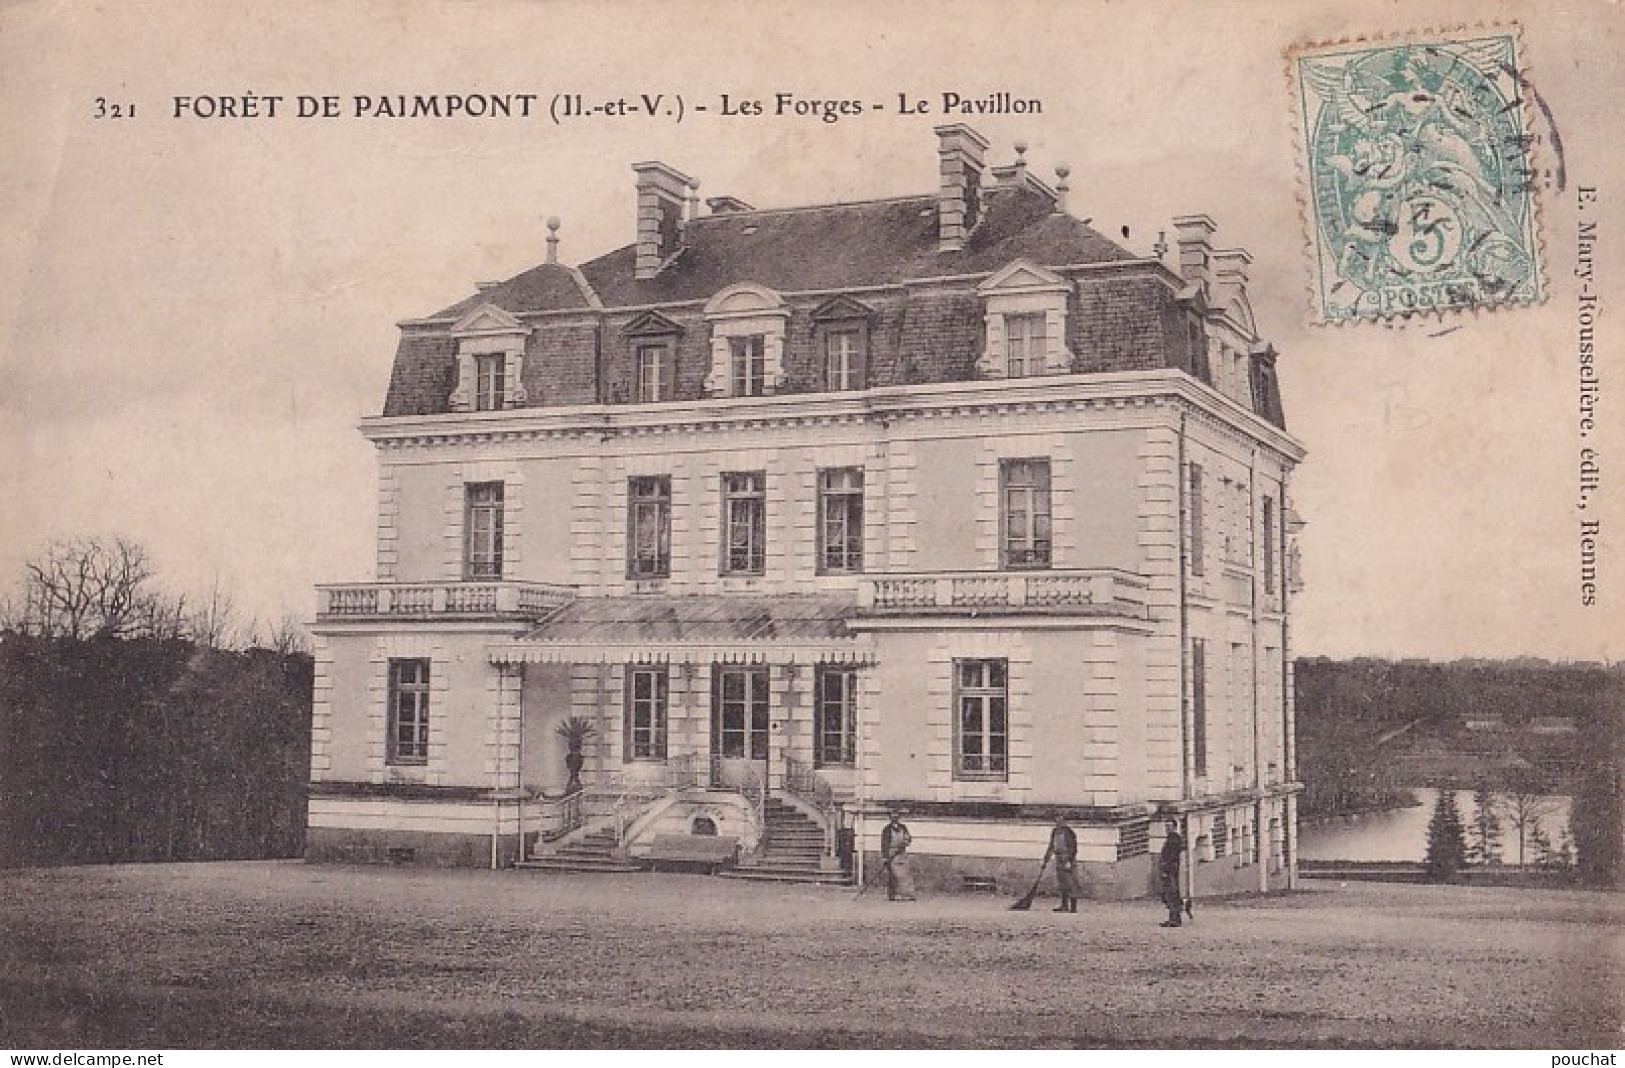  A25-35) FORET DE PAIMPONT - LES FORGES - LE PAVILLON - ANIMATION -  JARDINIERS - Paimpont